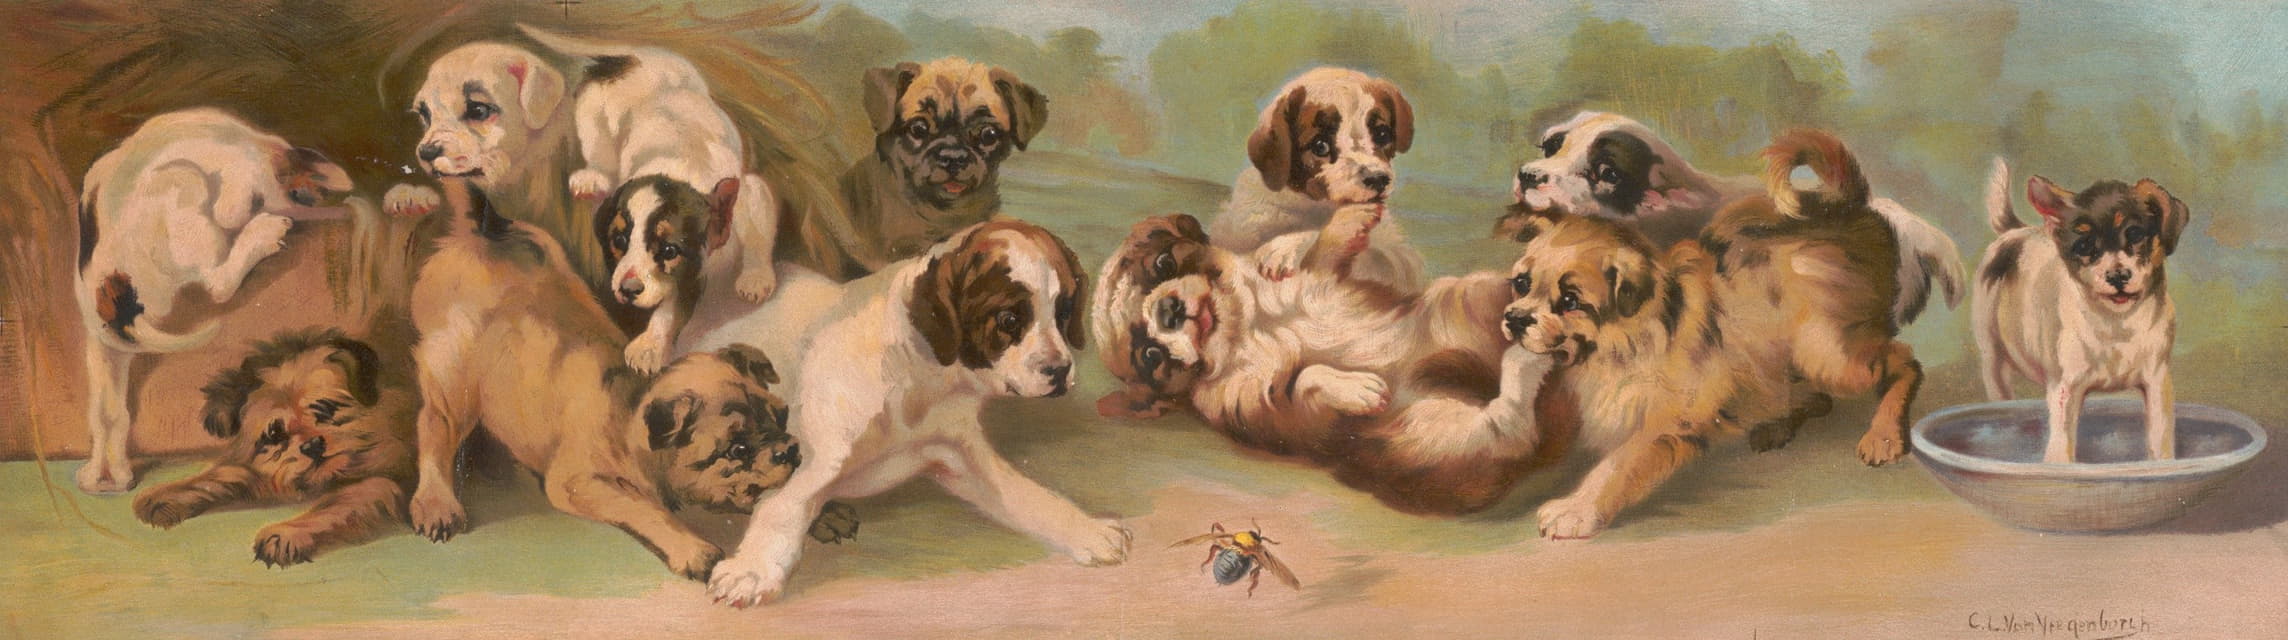 C.L. von Vregenborlh - Yard of puppies